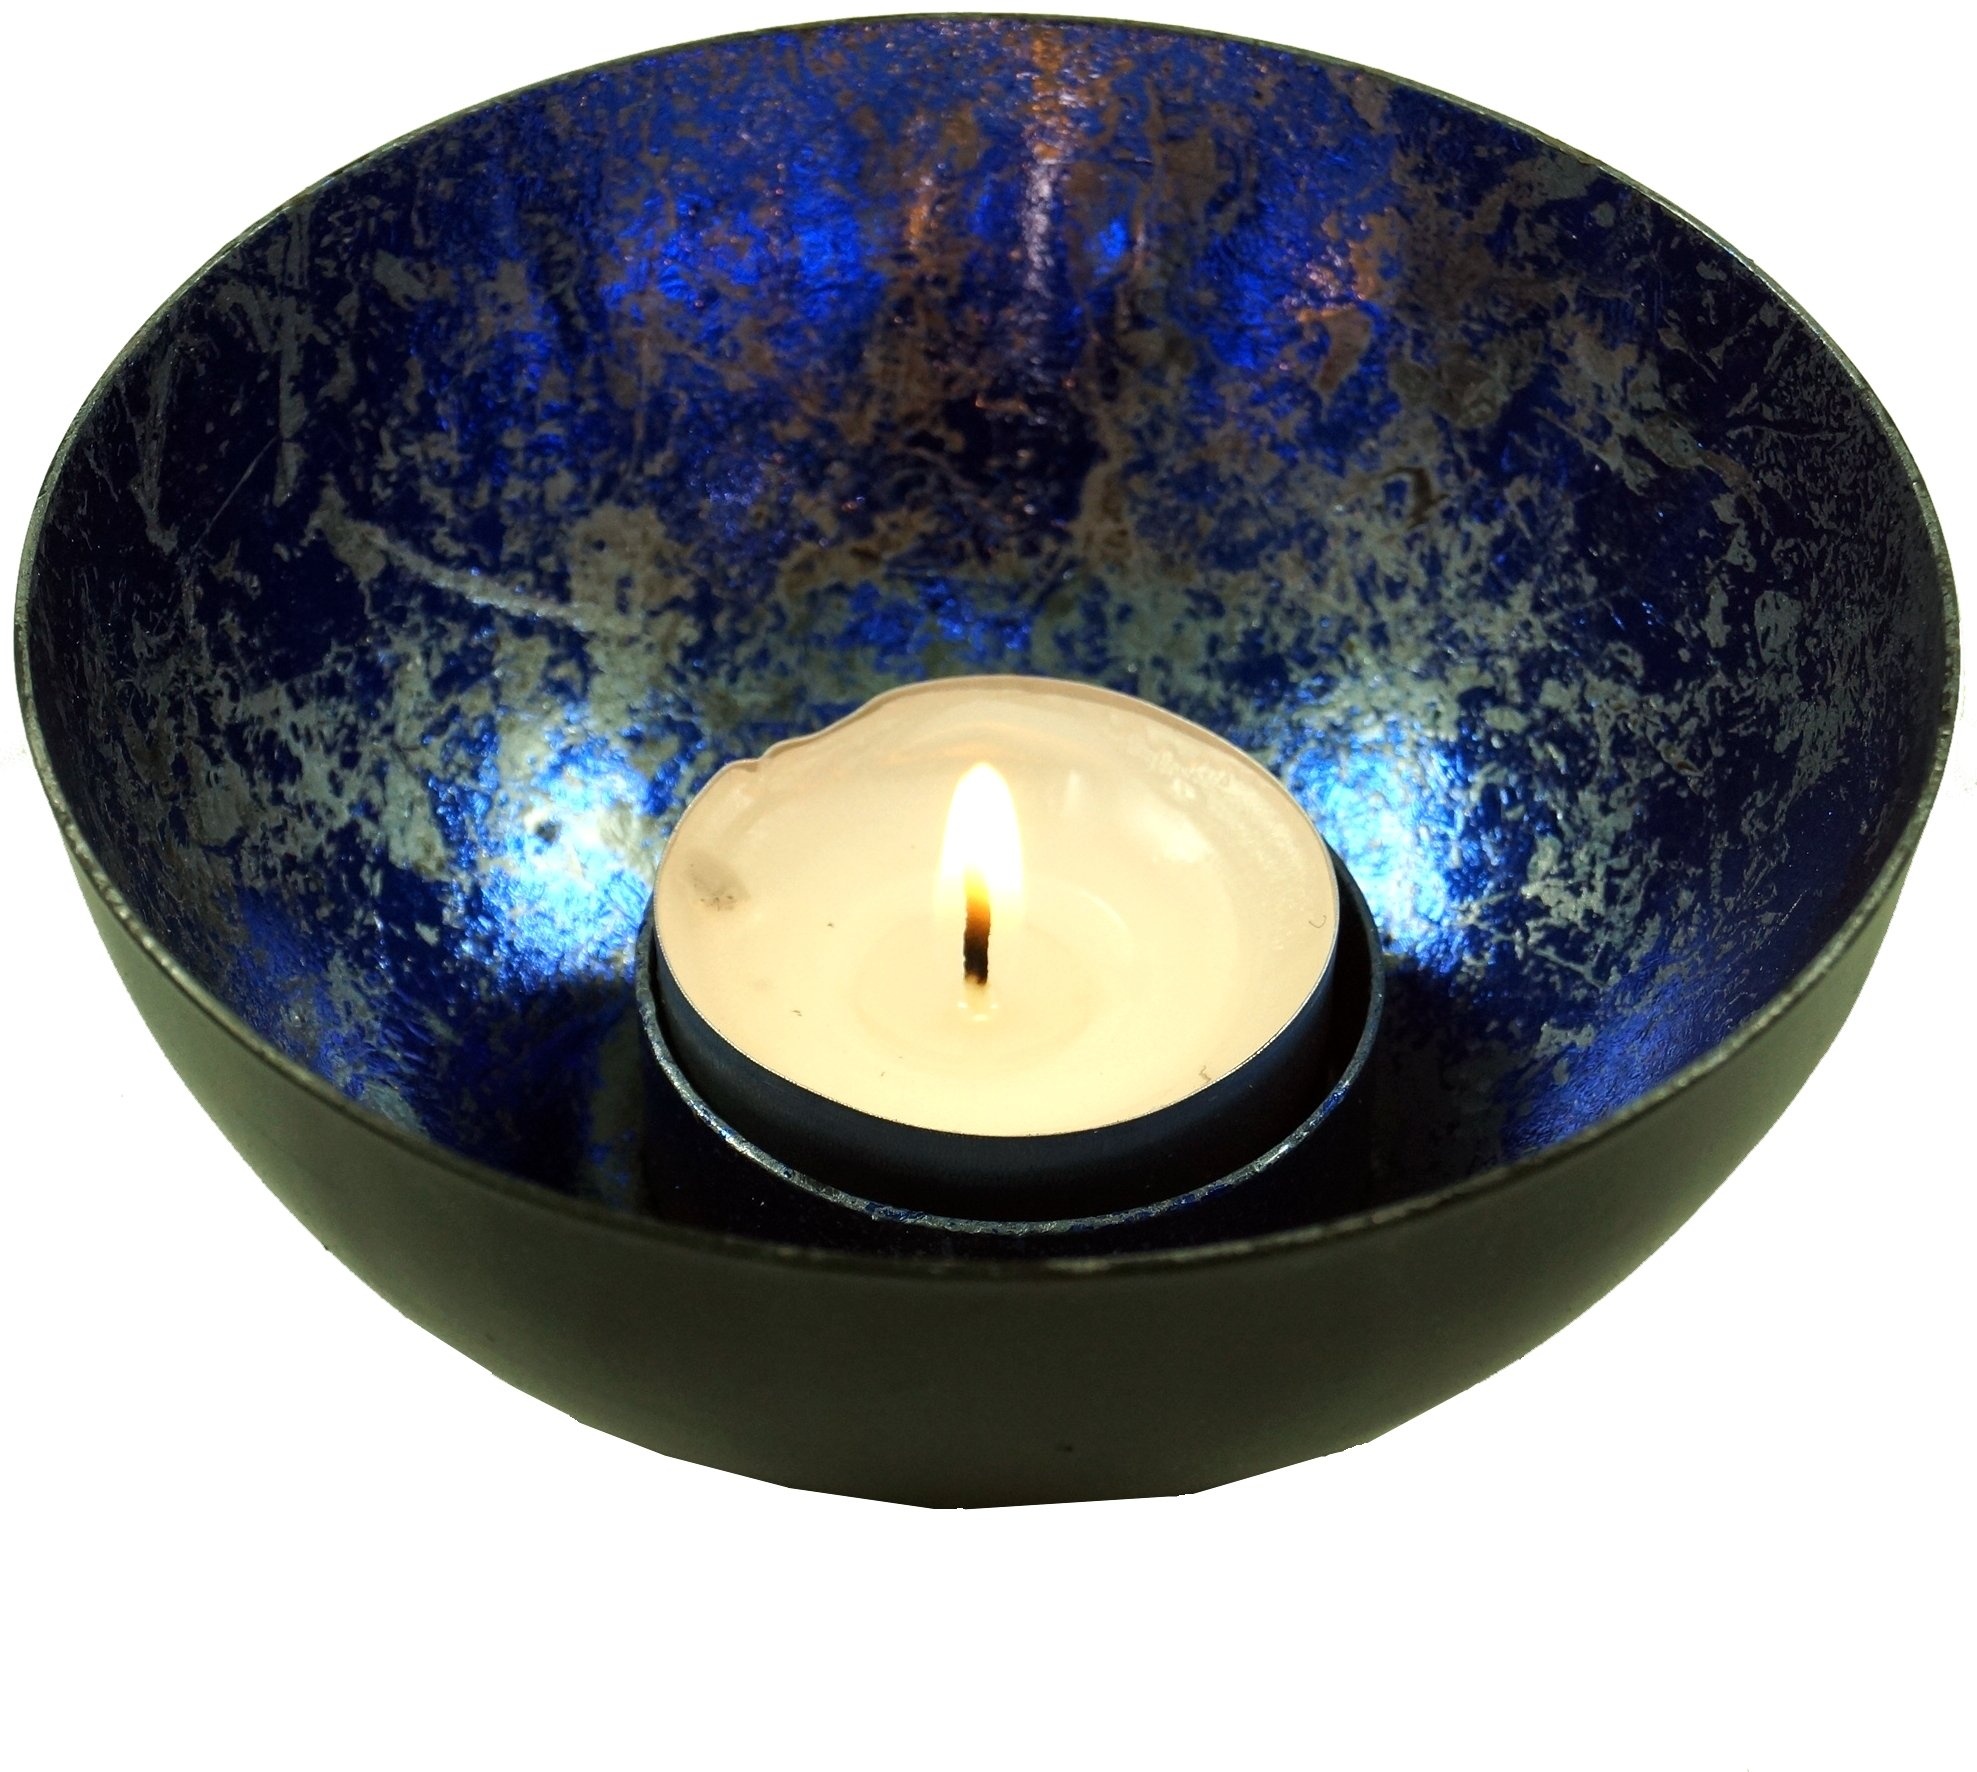 GURU SHOP Metall Teelicht Windlicht Blau, 5x10x10 cm, Teelichthalter & Kerzenhalter